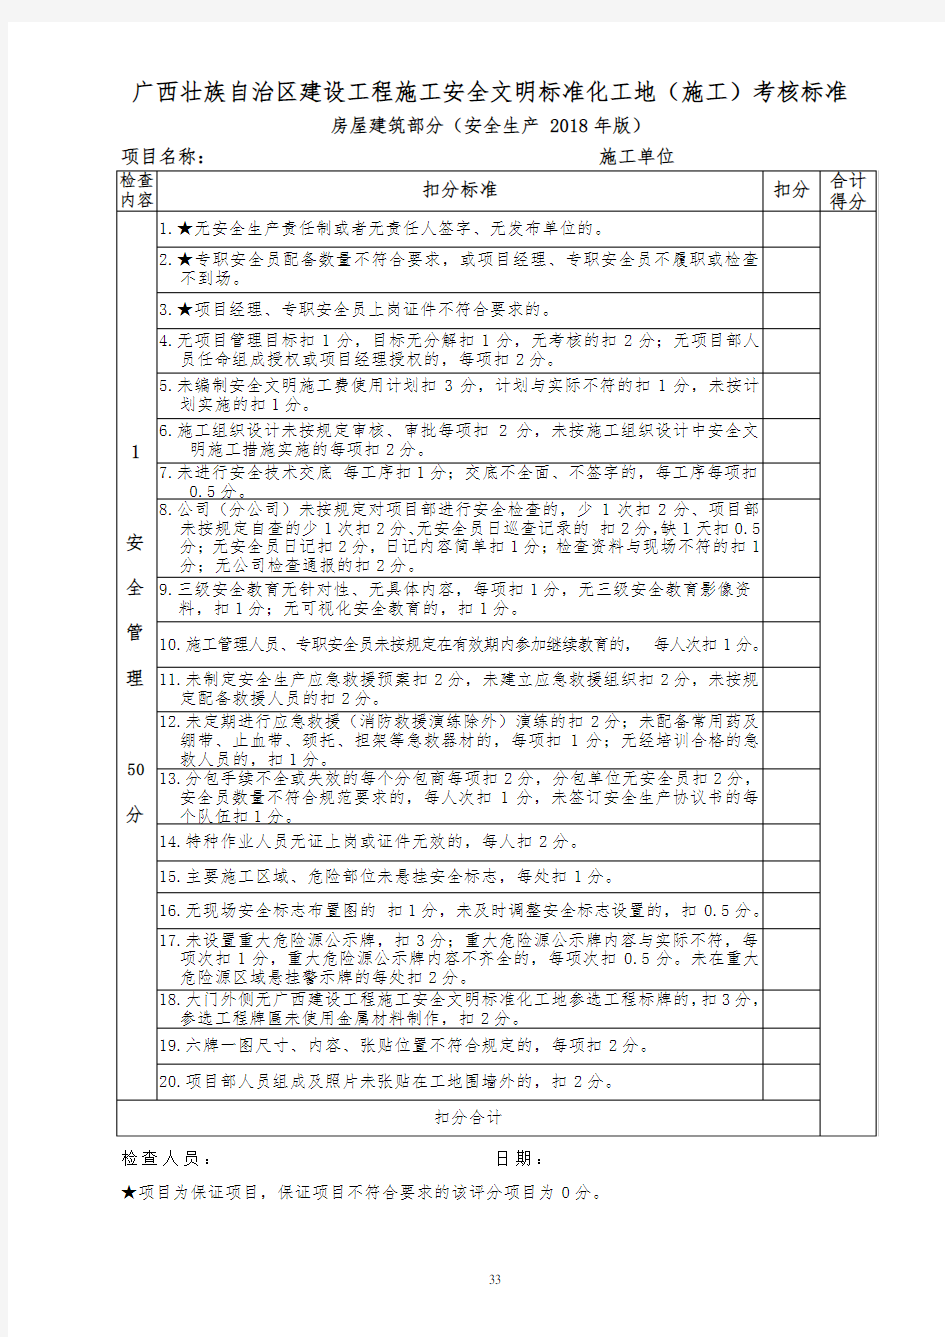 广西壮族自治区建设工程施工安全文明标准化工地(施工)考核标准